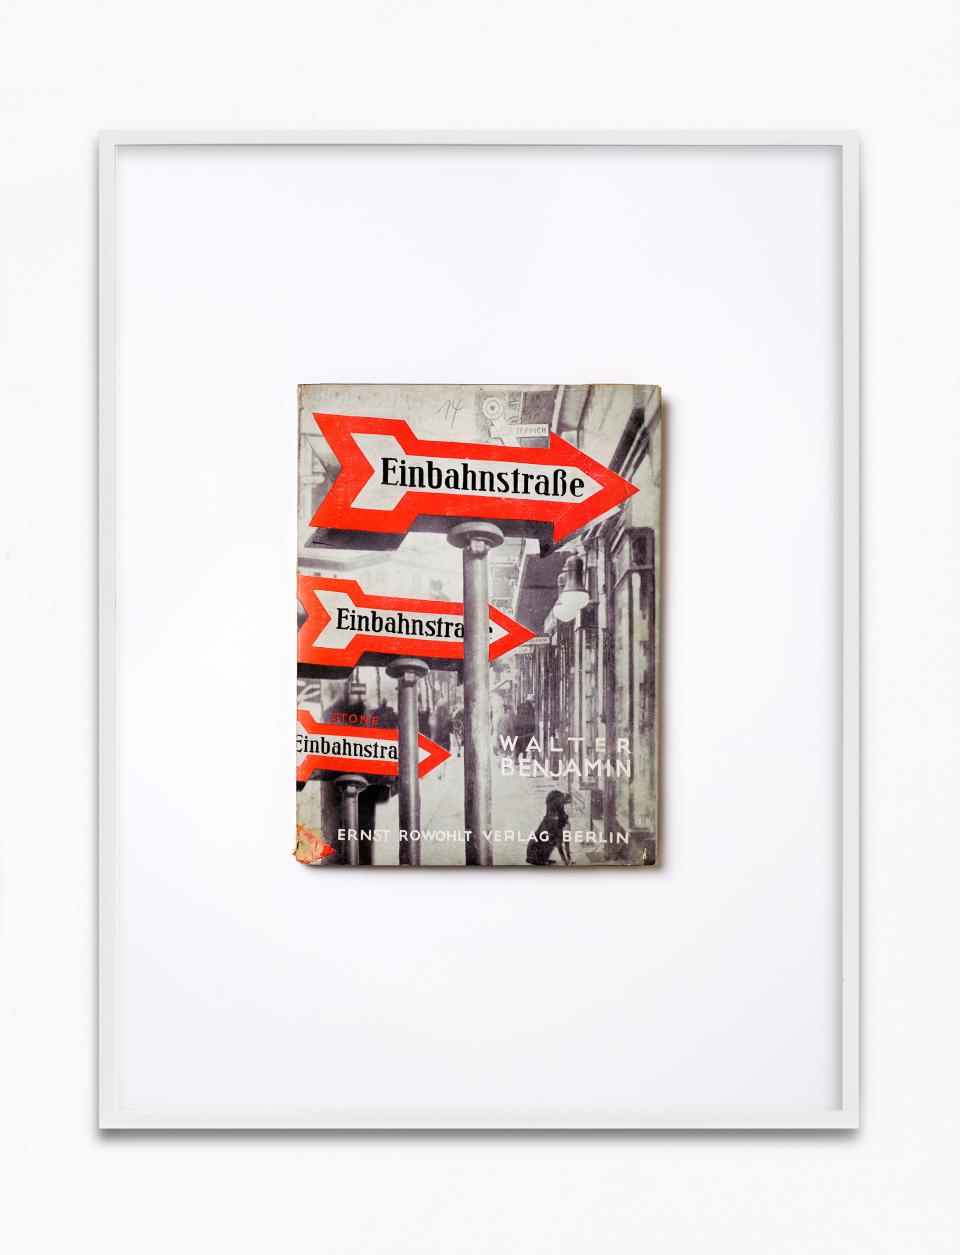 Buchcover von «Einbahnstrasse» von Walter Benjamin in einem Bilderrahmen